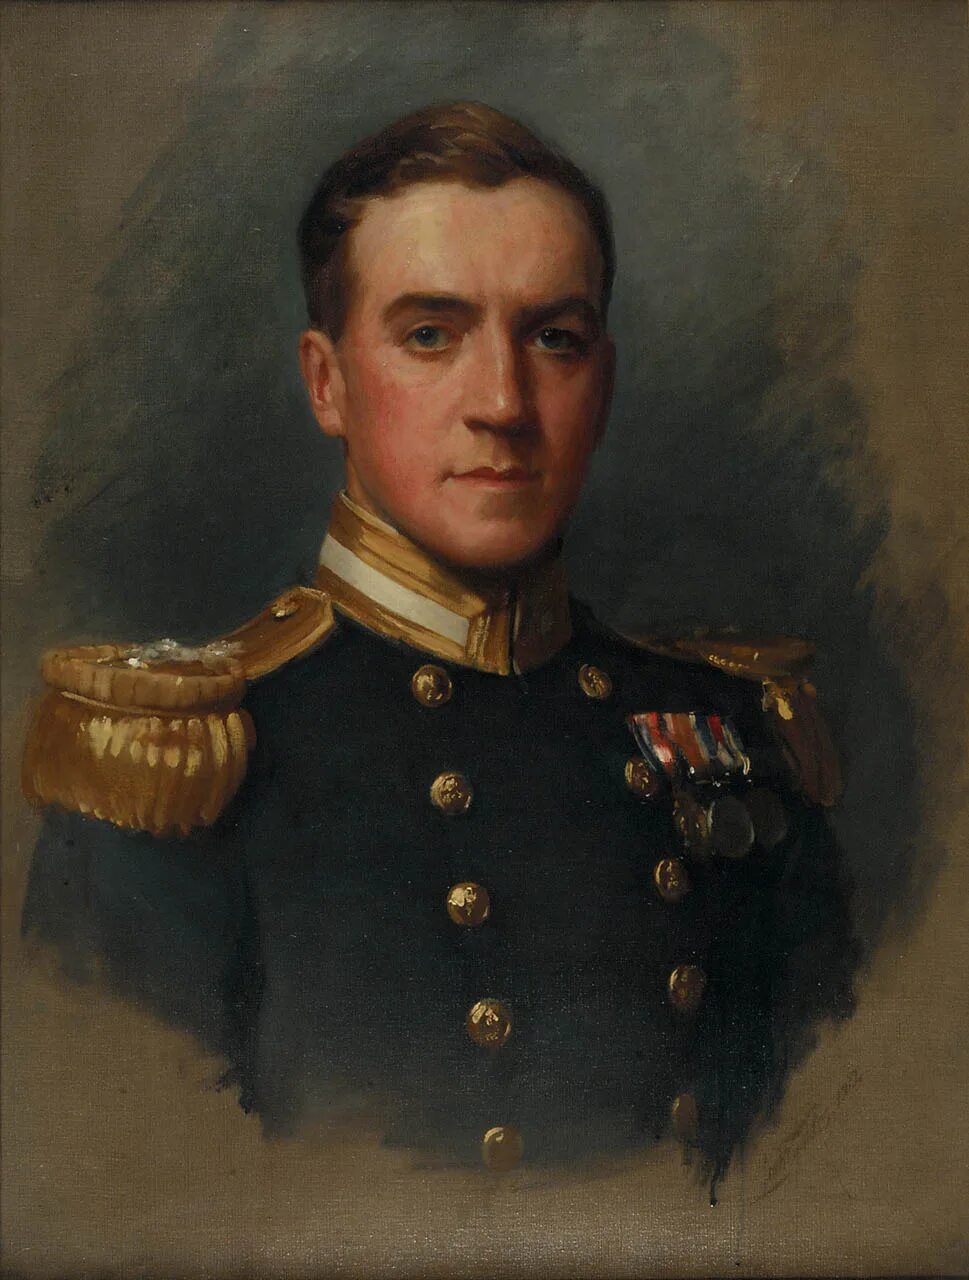 Сэмуэль люк Филдес (Samuel Luke fildes).. Портреты офицеров 19 века. Портрет офицера. Портрет в военной форме.